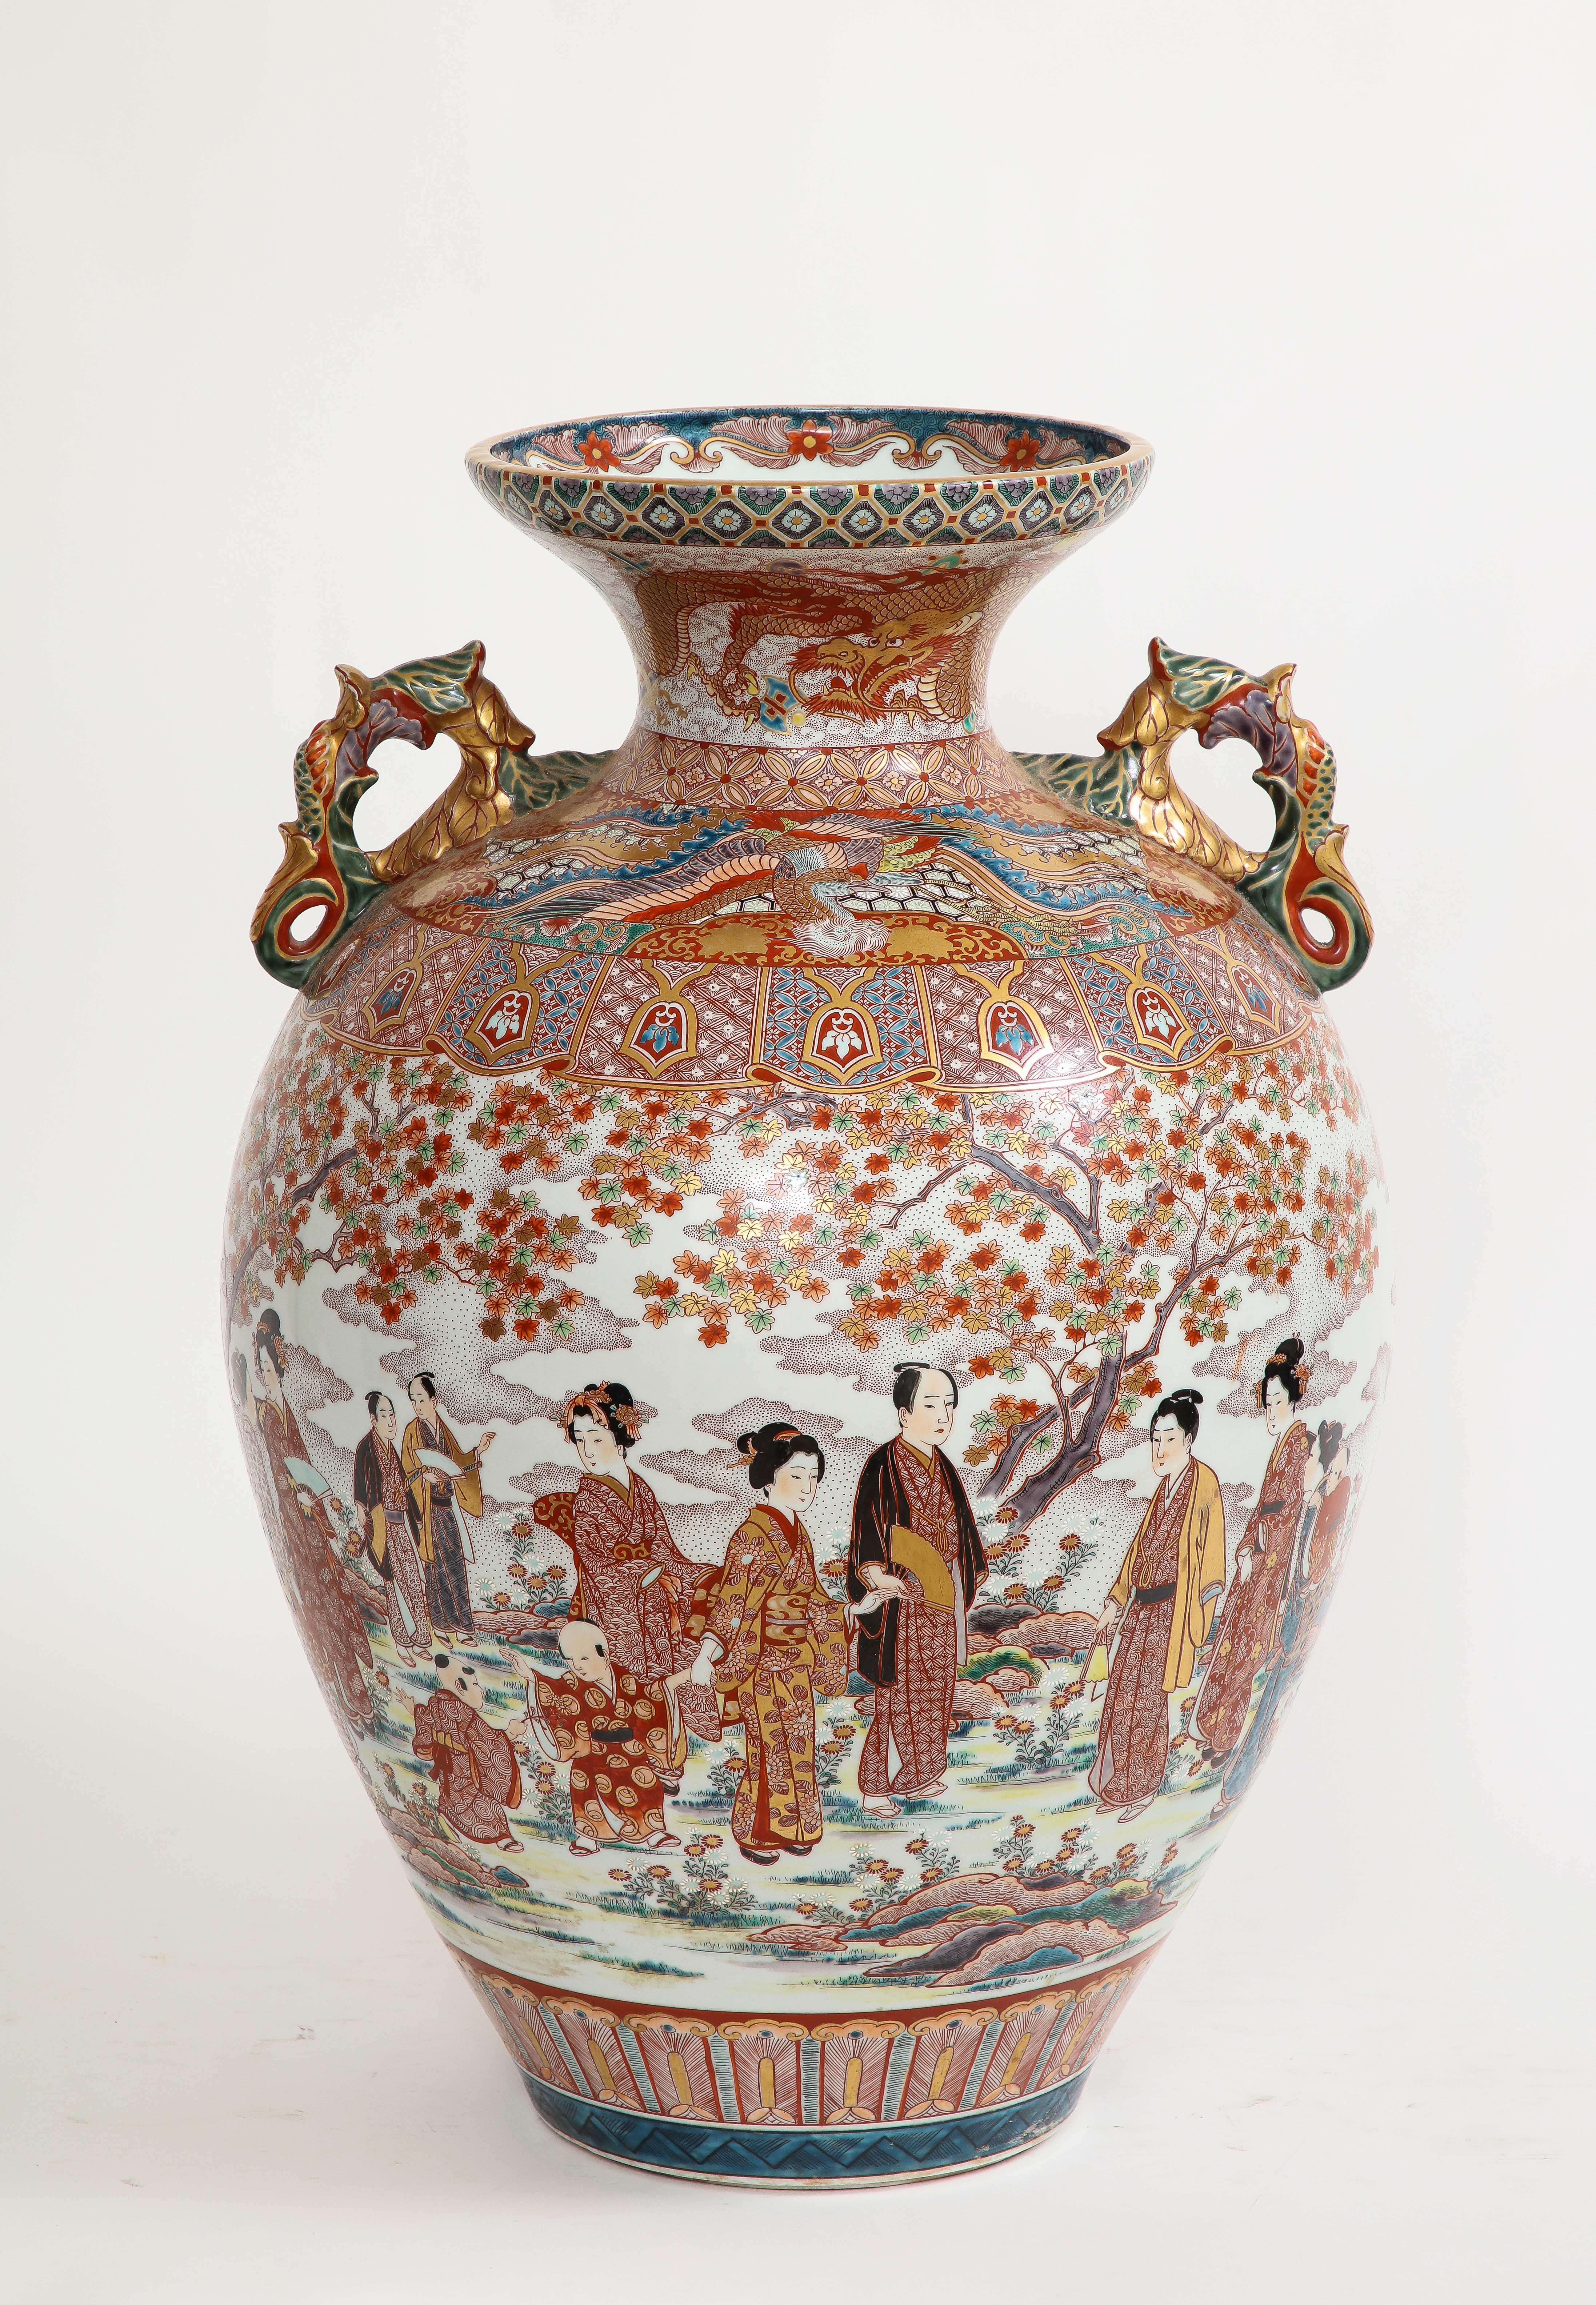 Vase monumental en porcelaine japonaise Kutani, période Meiji/Taisho, signé Akiyama sei.  Le corps principal est entièrement peint à la main avec de magnifiques décorations comprenant des figures japonaises de jeunes filles, des messieurs, des